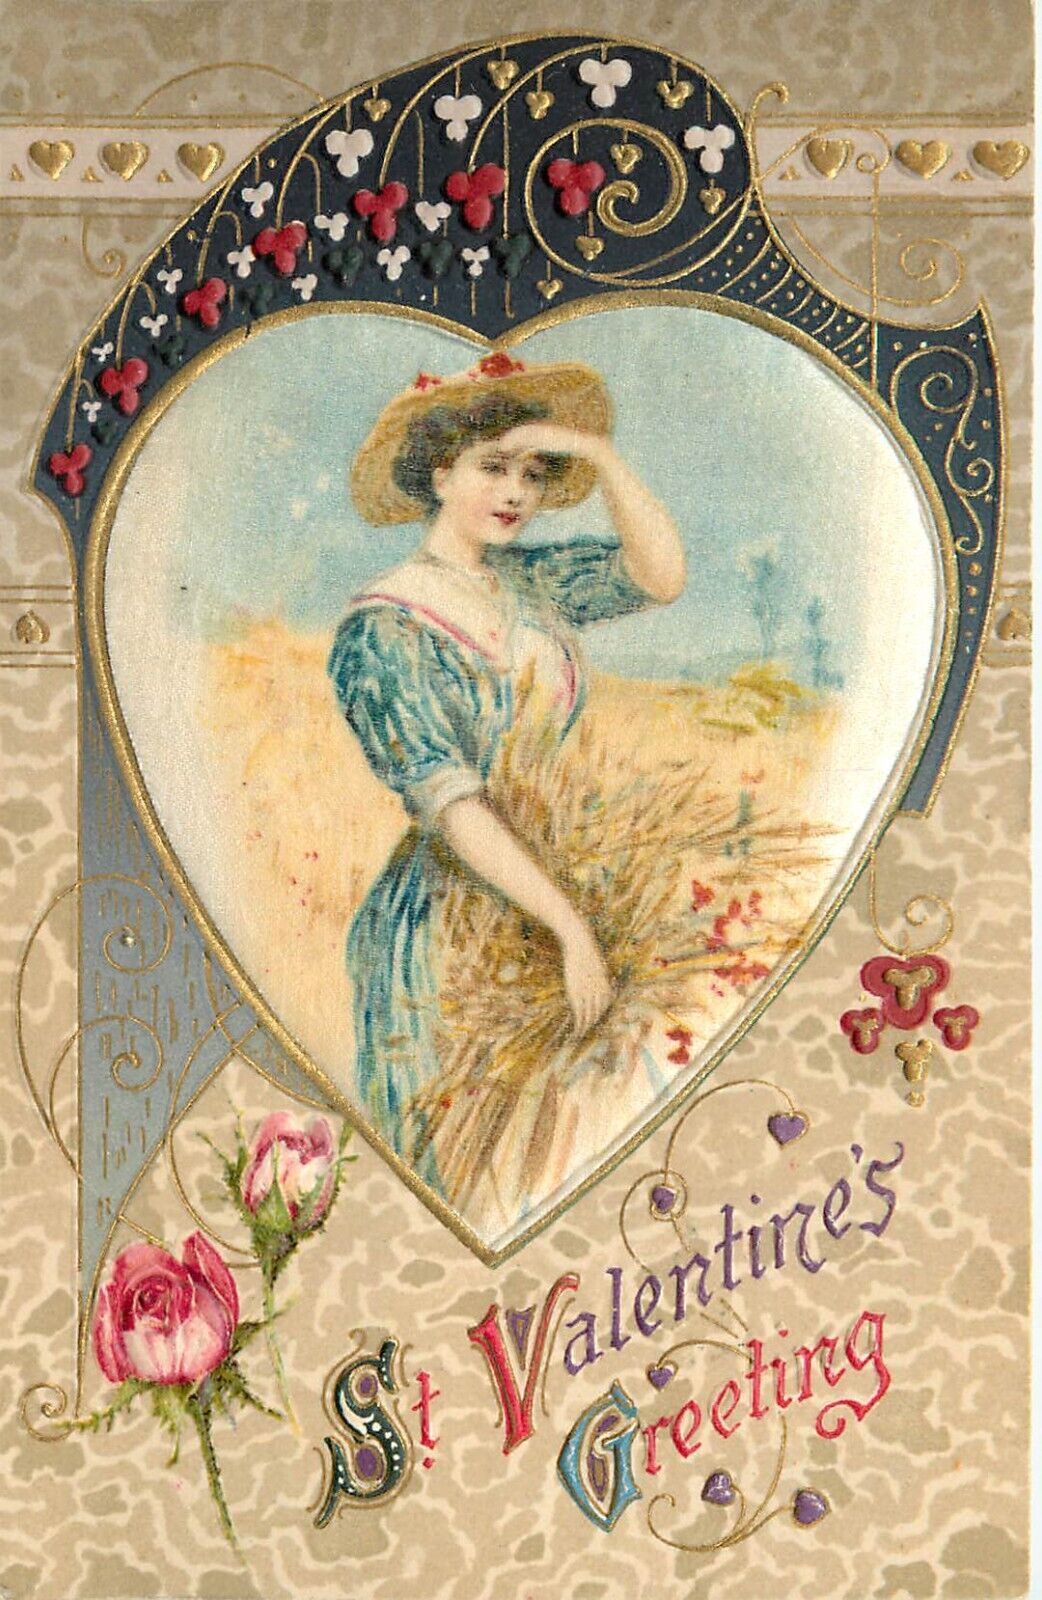 Winsch Schmucker Valentine Embossed Silk Postcard Beautiful Woman in Wheat Field